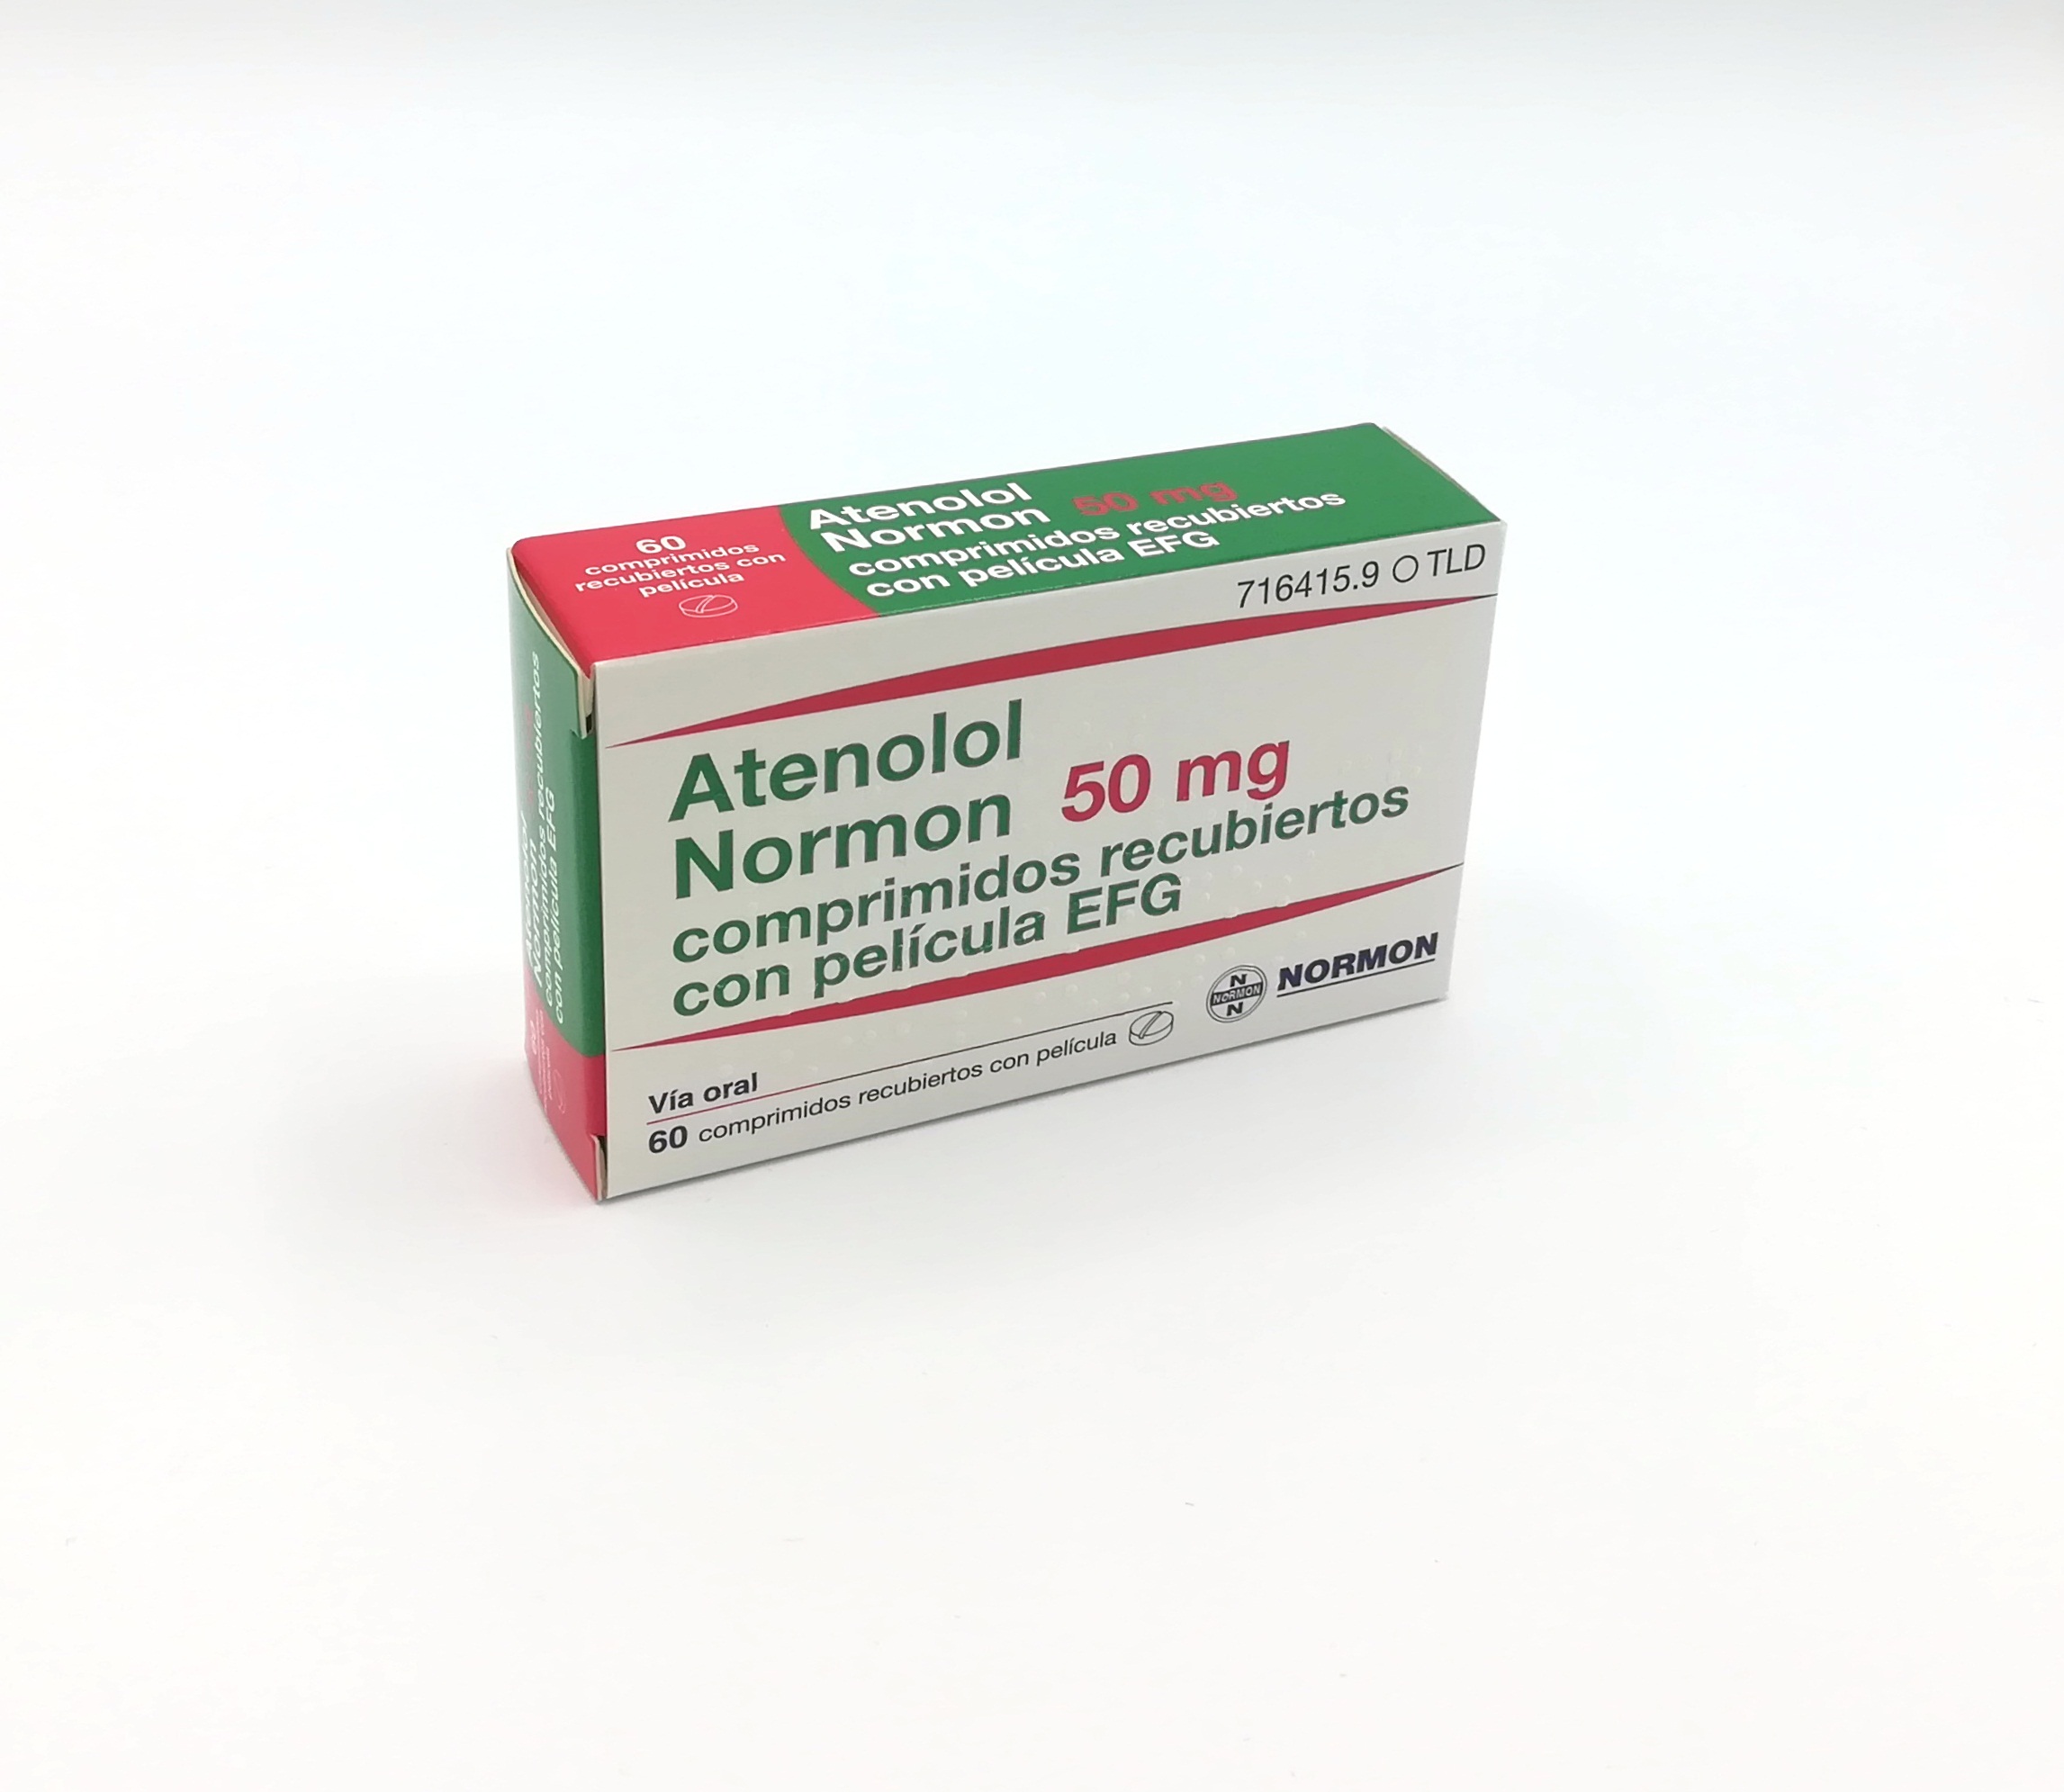 ATENOLOL NORMON EFG 50 mg 30 COMPRIMIDOS RECUBIERTOS